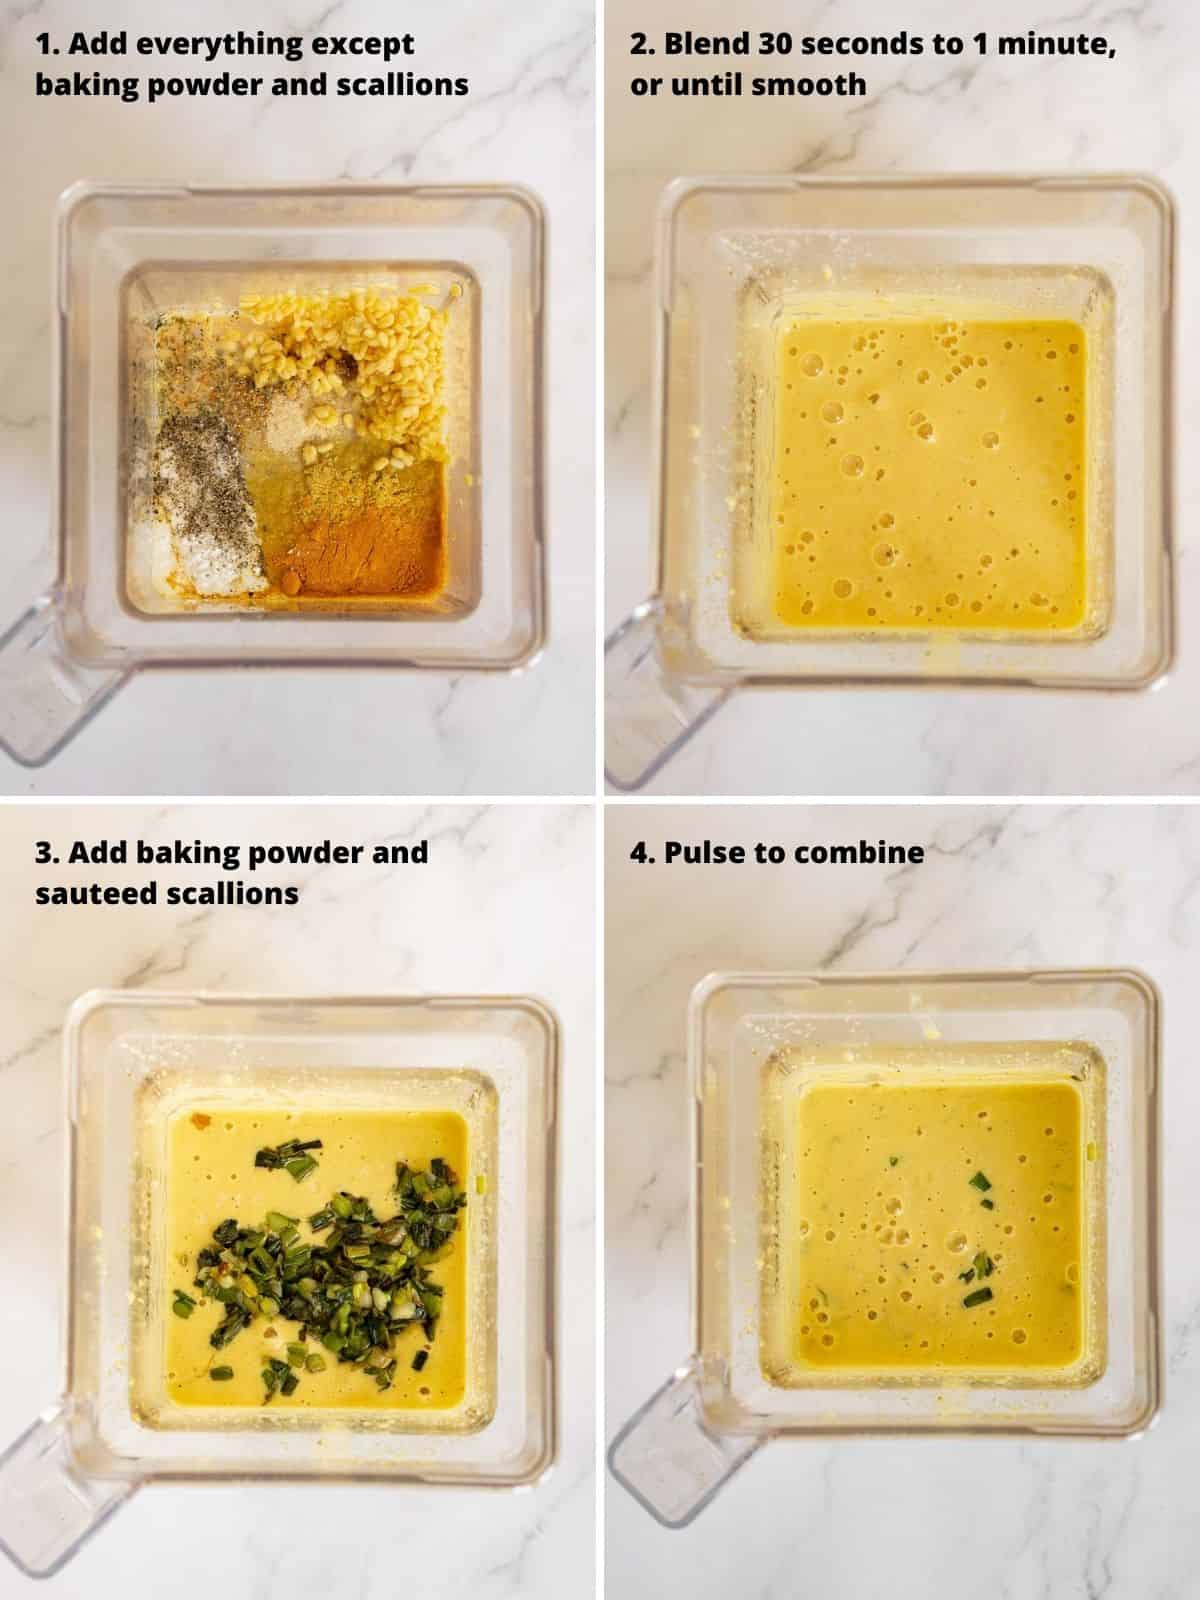 4 photos showing blending mung beans in a blender to make mung bean pancake batter